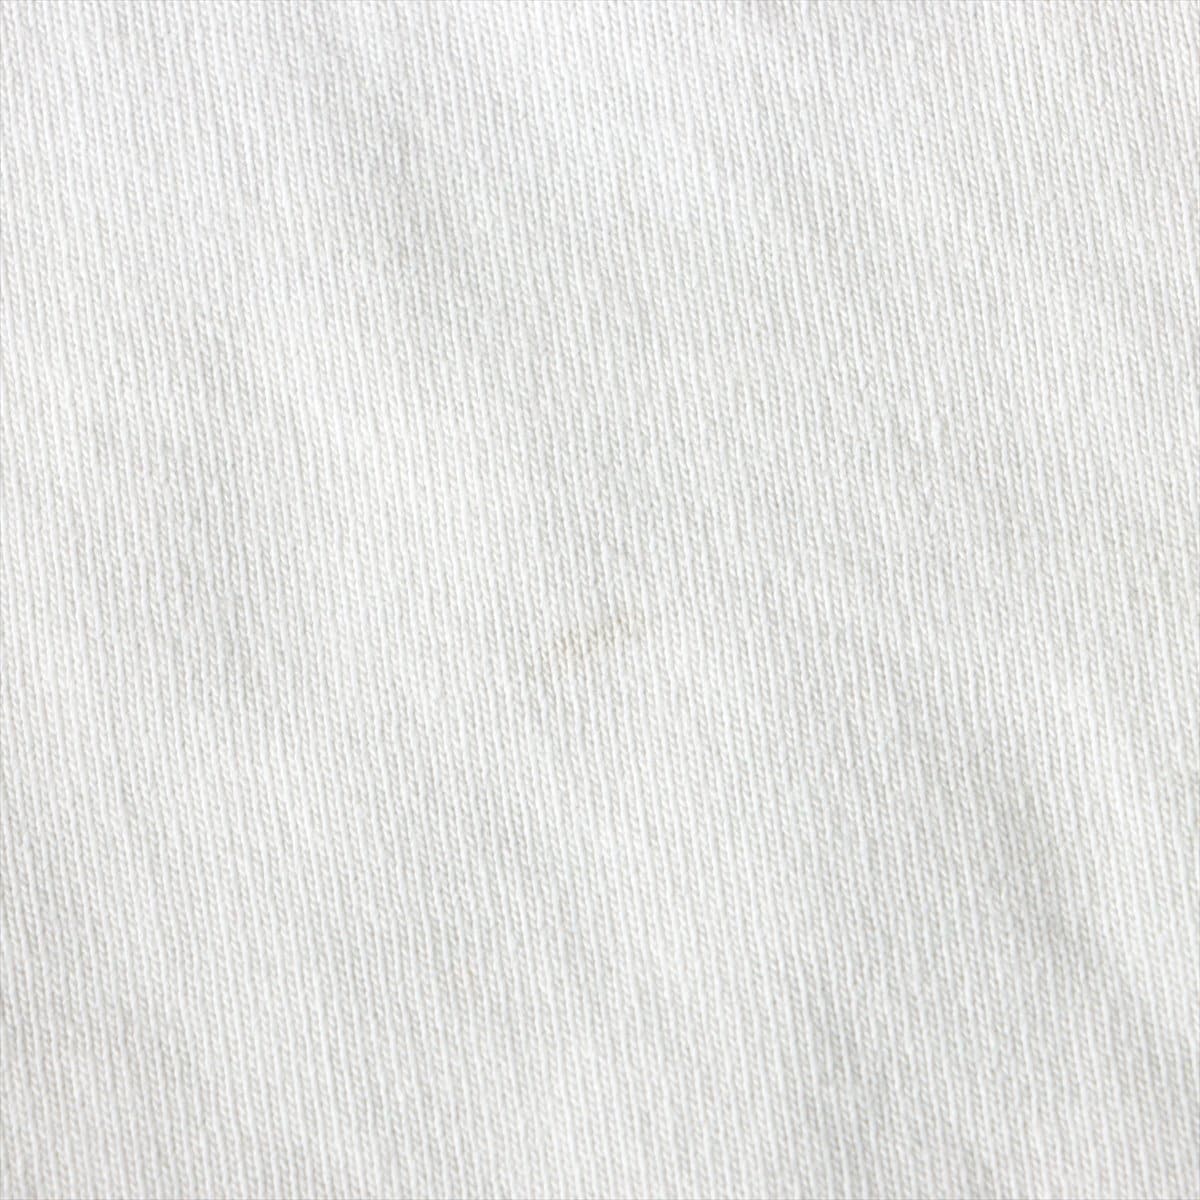 ルイヴィトン 素材不明 Tシャツ サイズ不明 メンズ ホワイト 品質タグ無し バックロゴ